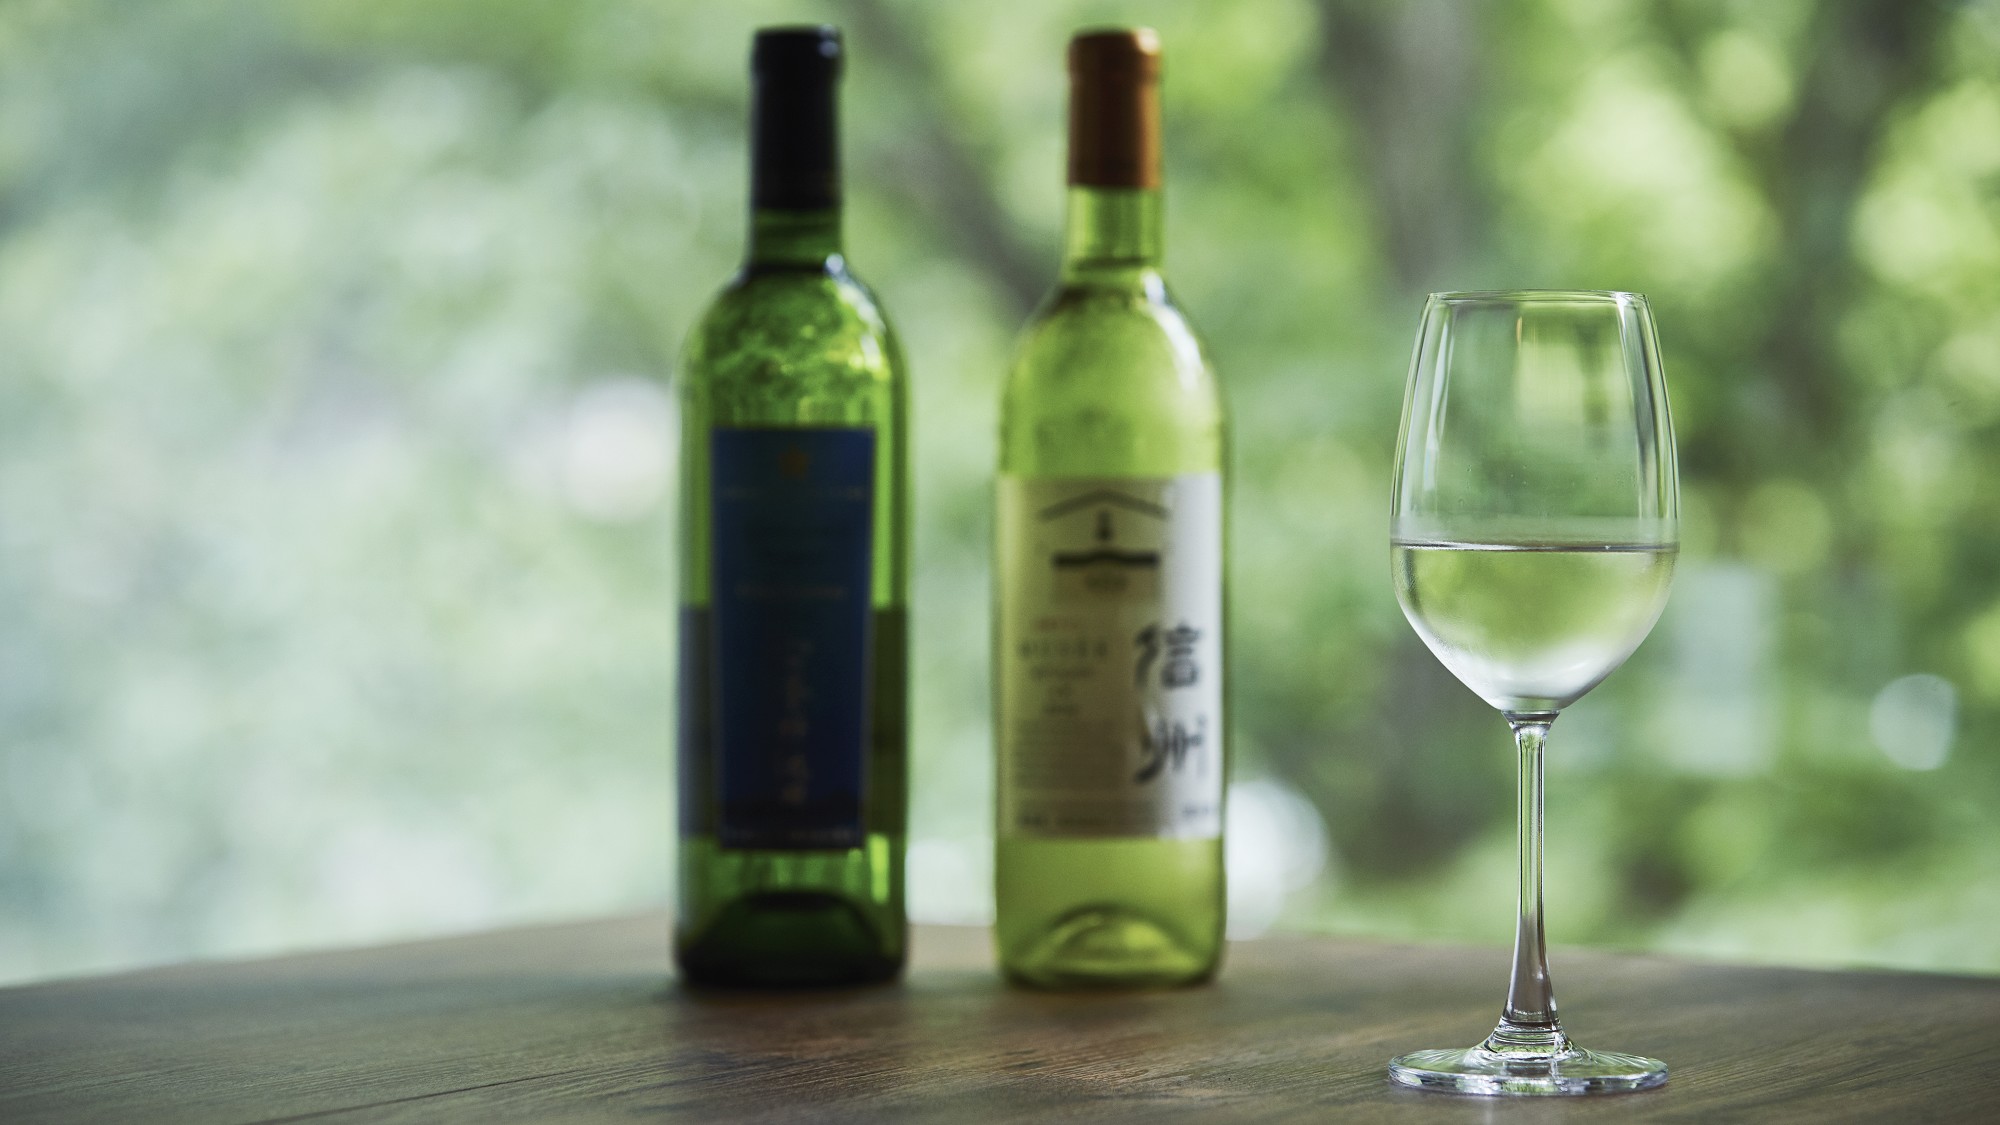 NAGANO WINE◆長野県はワイン用ぶどうの生産量は日本一を誇ります